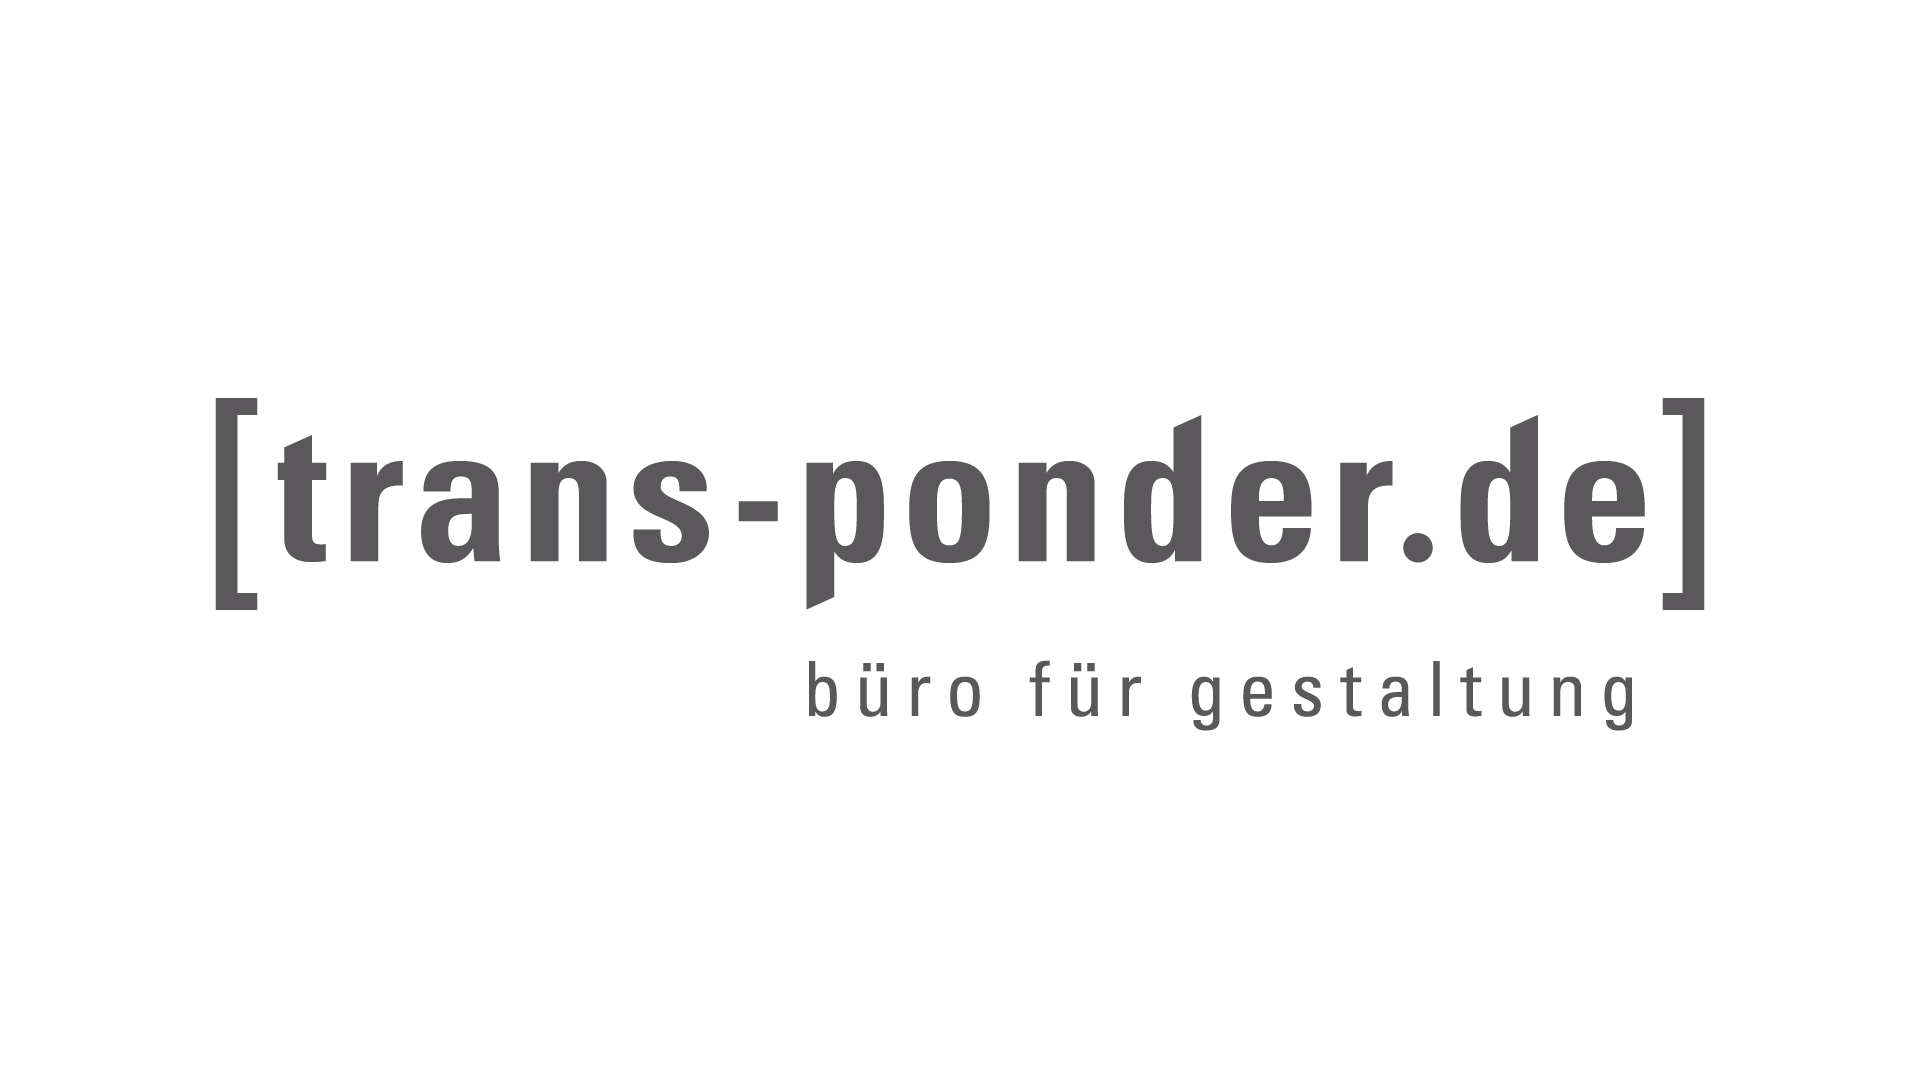 trans-ponder.de – büro für gestaltung: Logo und Geschäftspapiere